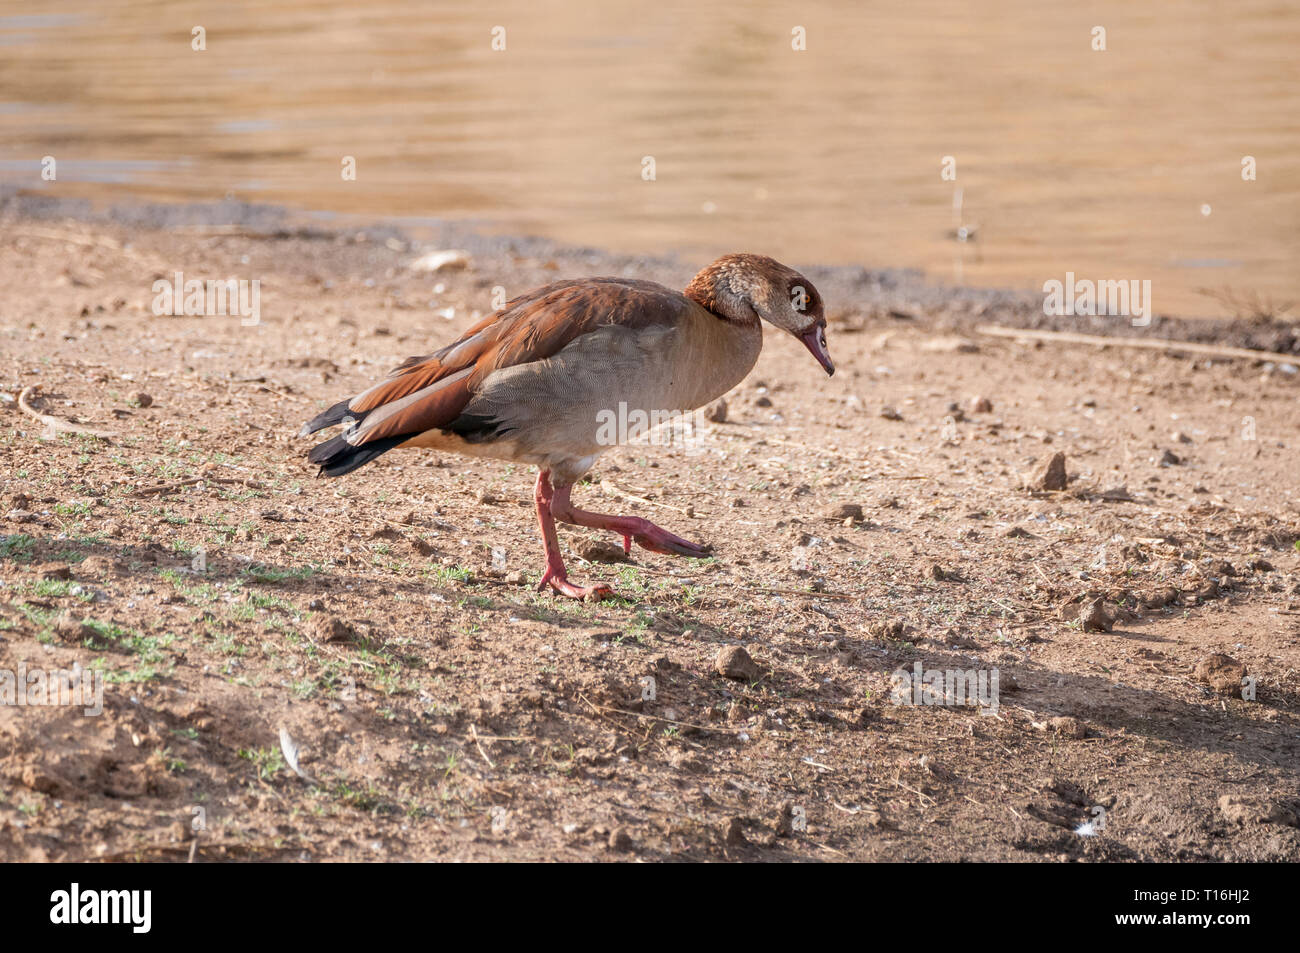 Egyptian goose, Alopochen aegyptiacus, near a waterhole, Namibia Stock Photo